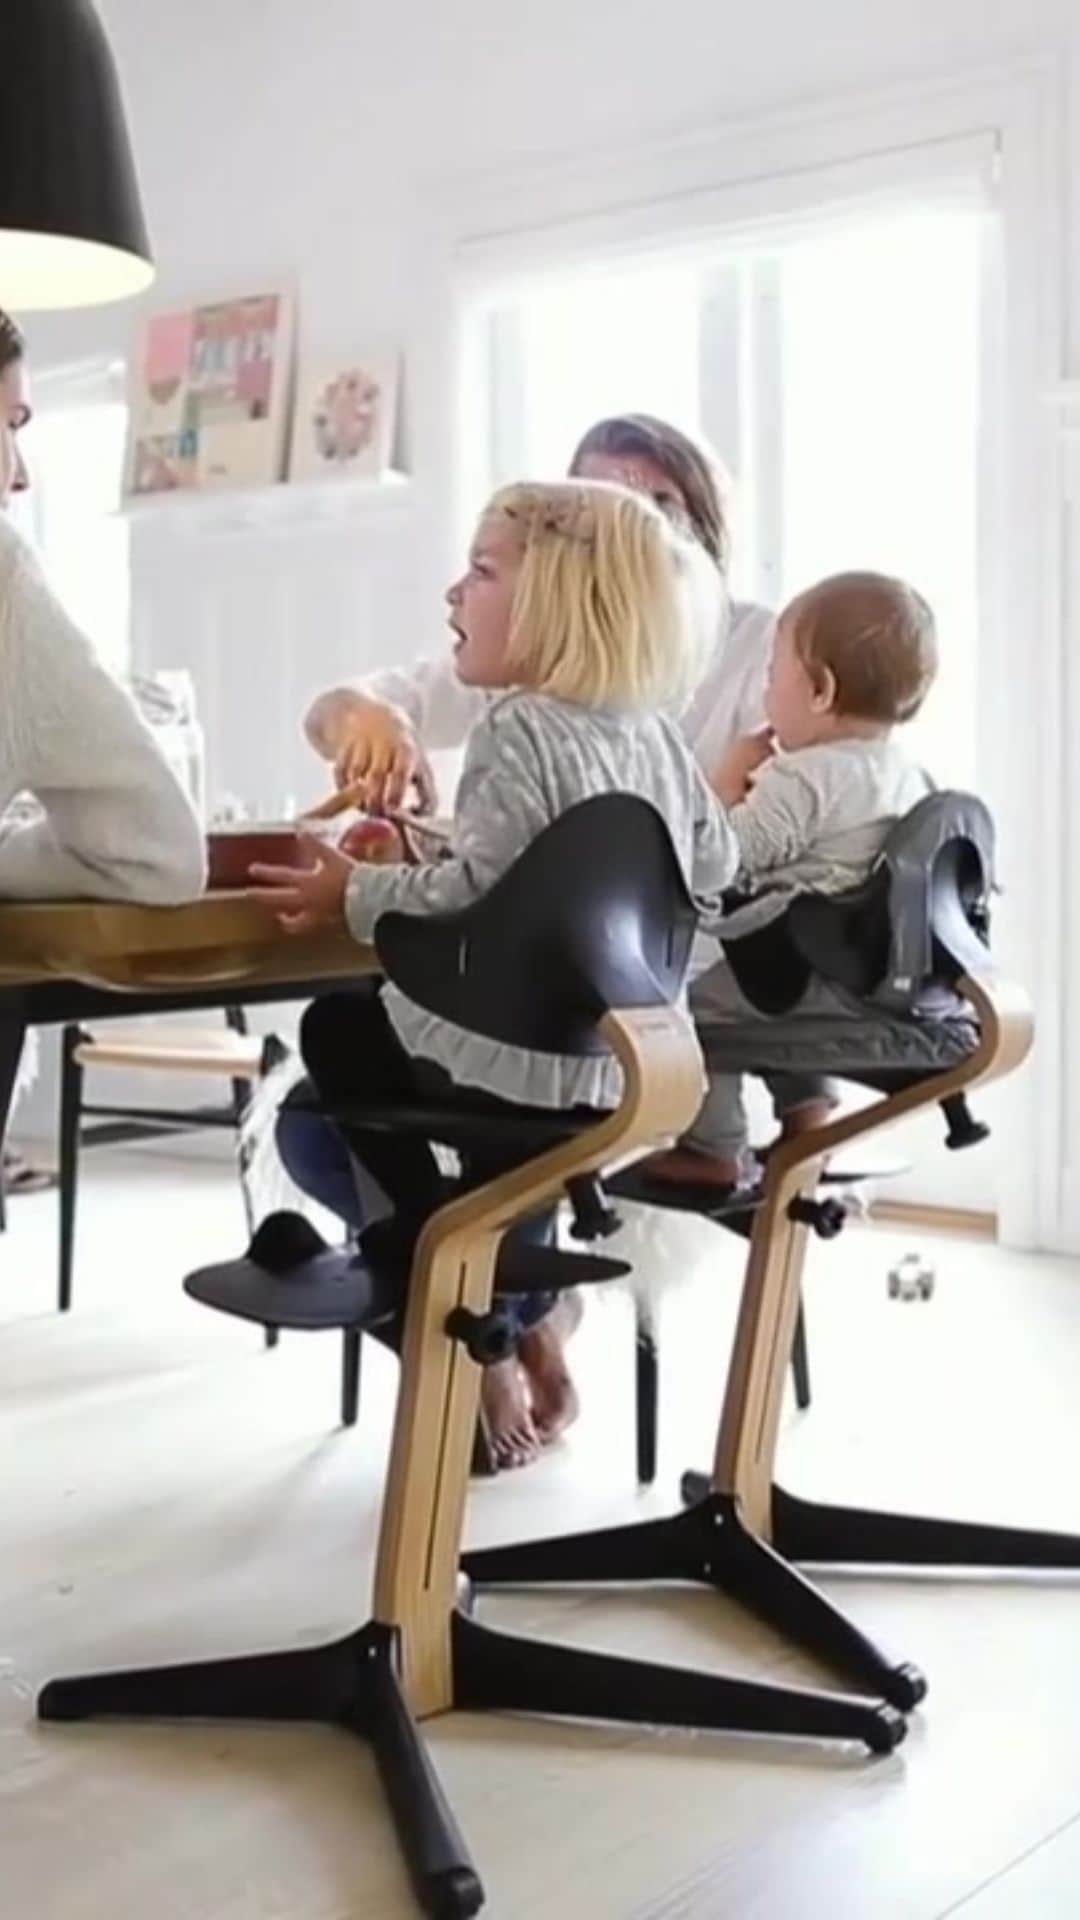 Stokke Japanのインスタグラム：「子どもの自由な動きをサポートするイス「ストッケ ノミ」 ストッケが誇る、子どもと一緒に成長していくイス「トリップ トラップ」の発売から50年。 「座る」ことを探究し続けた椅子の革命家ピーター・オプスヴィック氏による次なるデザインの「ストッケ ノミ」が発売となります。  #ストッケ #ストッケノミ #stokke #stokkenomi #ベビーチェア #ハイチェア #キッズチェア #子供椅子 #離乳食 #離乳食準備 #お食い初め #成長記録 #離乳食初期 #ハイチェアデビュー #大人まで使える #初めての一生もの #自由に座る #令和5年ベビー #生後5ヶ月 #生後6ヶ月 #ハーフバースデー #新米ママ #出産準備リスト #出産祝い #出産準備 #北欧インテリア #北欧の子育て #シンプルインテリア #モダンインテリア #デザイナーズチェア」